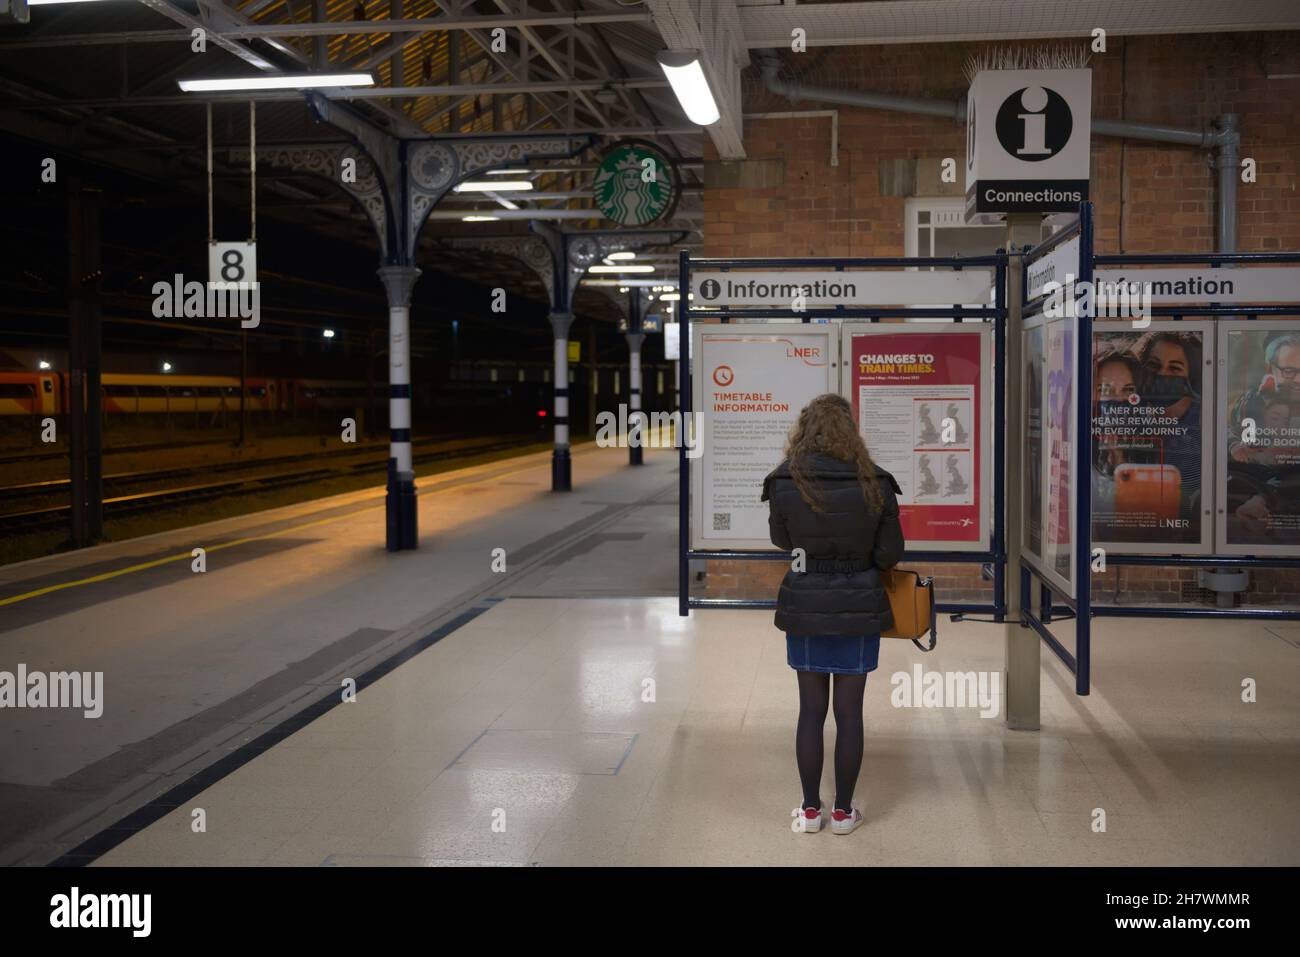 Doncaster, Royaume-Uni, 22 mai 2021: Une femme porte un manteau d'hiver la nuit, tout en lisant les informations sur une plate-forme propre de la gare de doncaster Banque D'Images